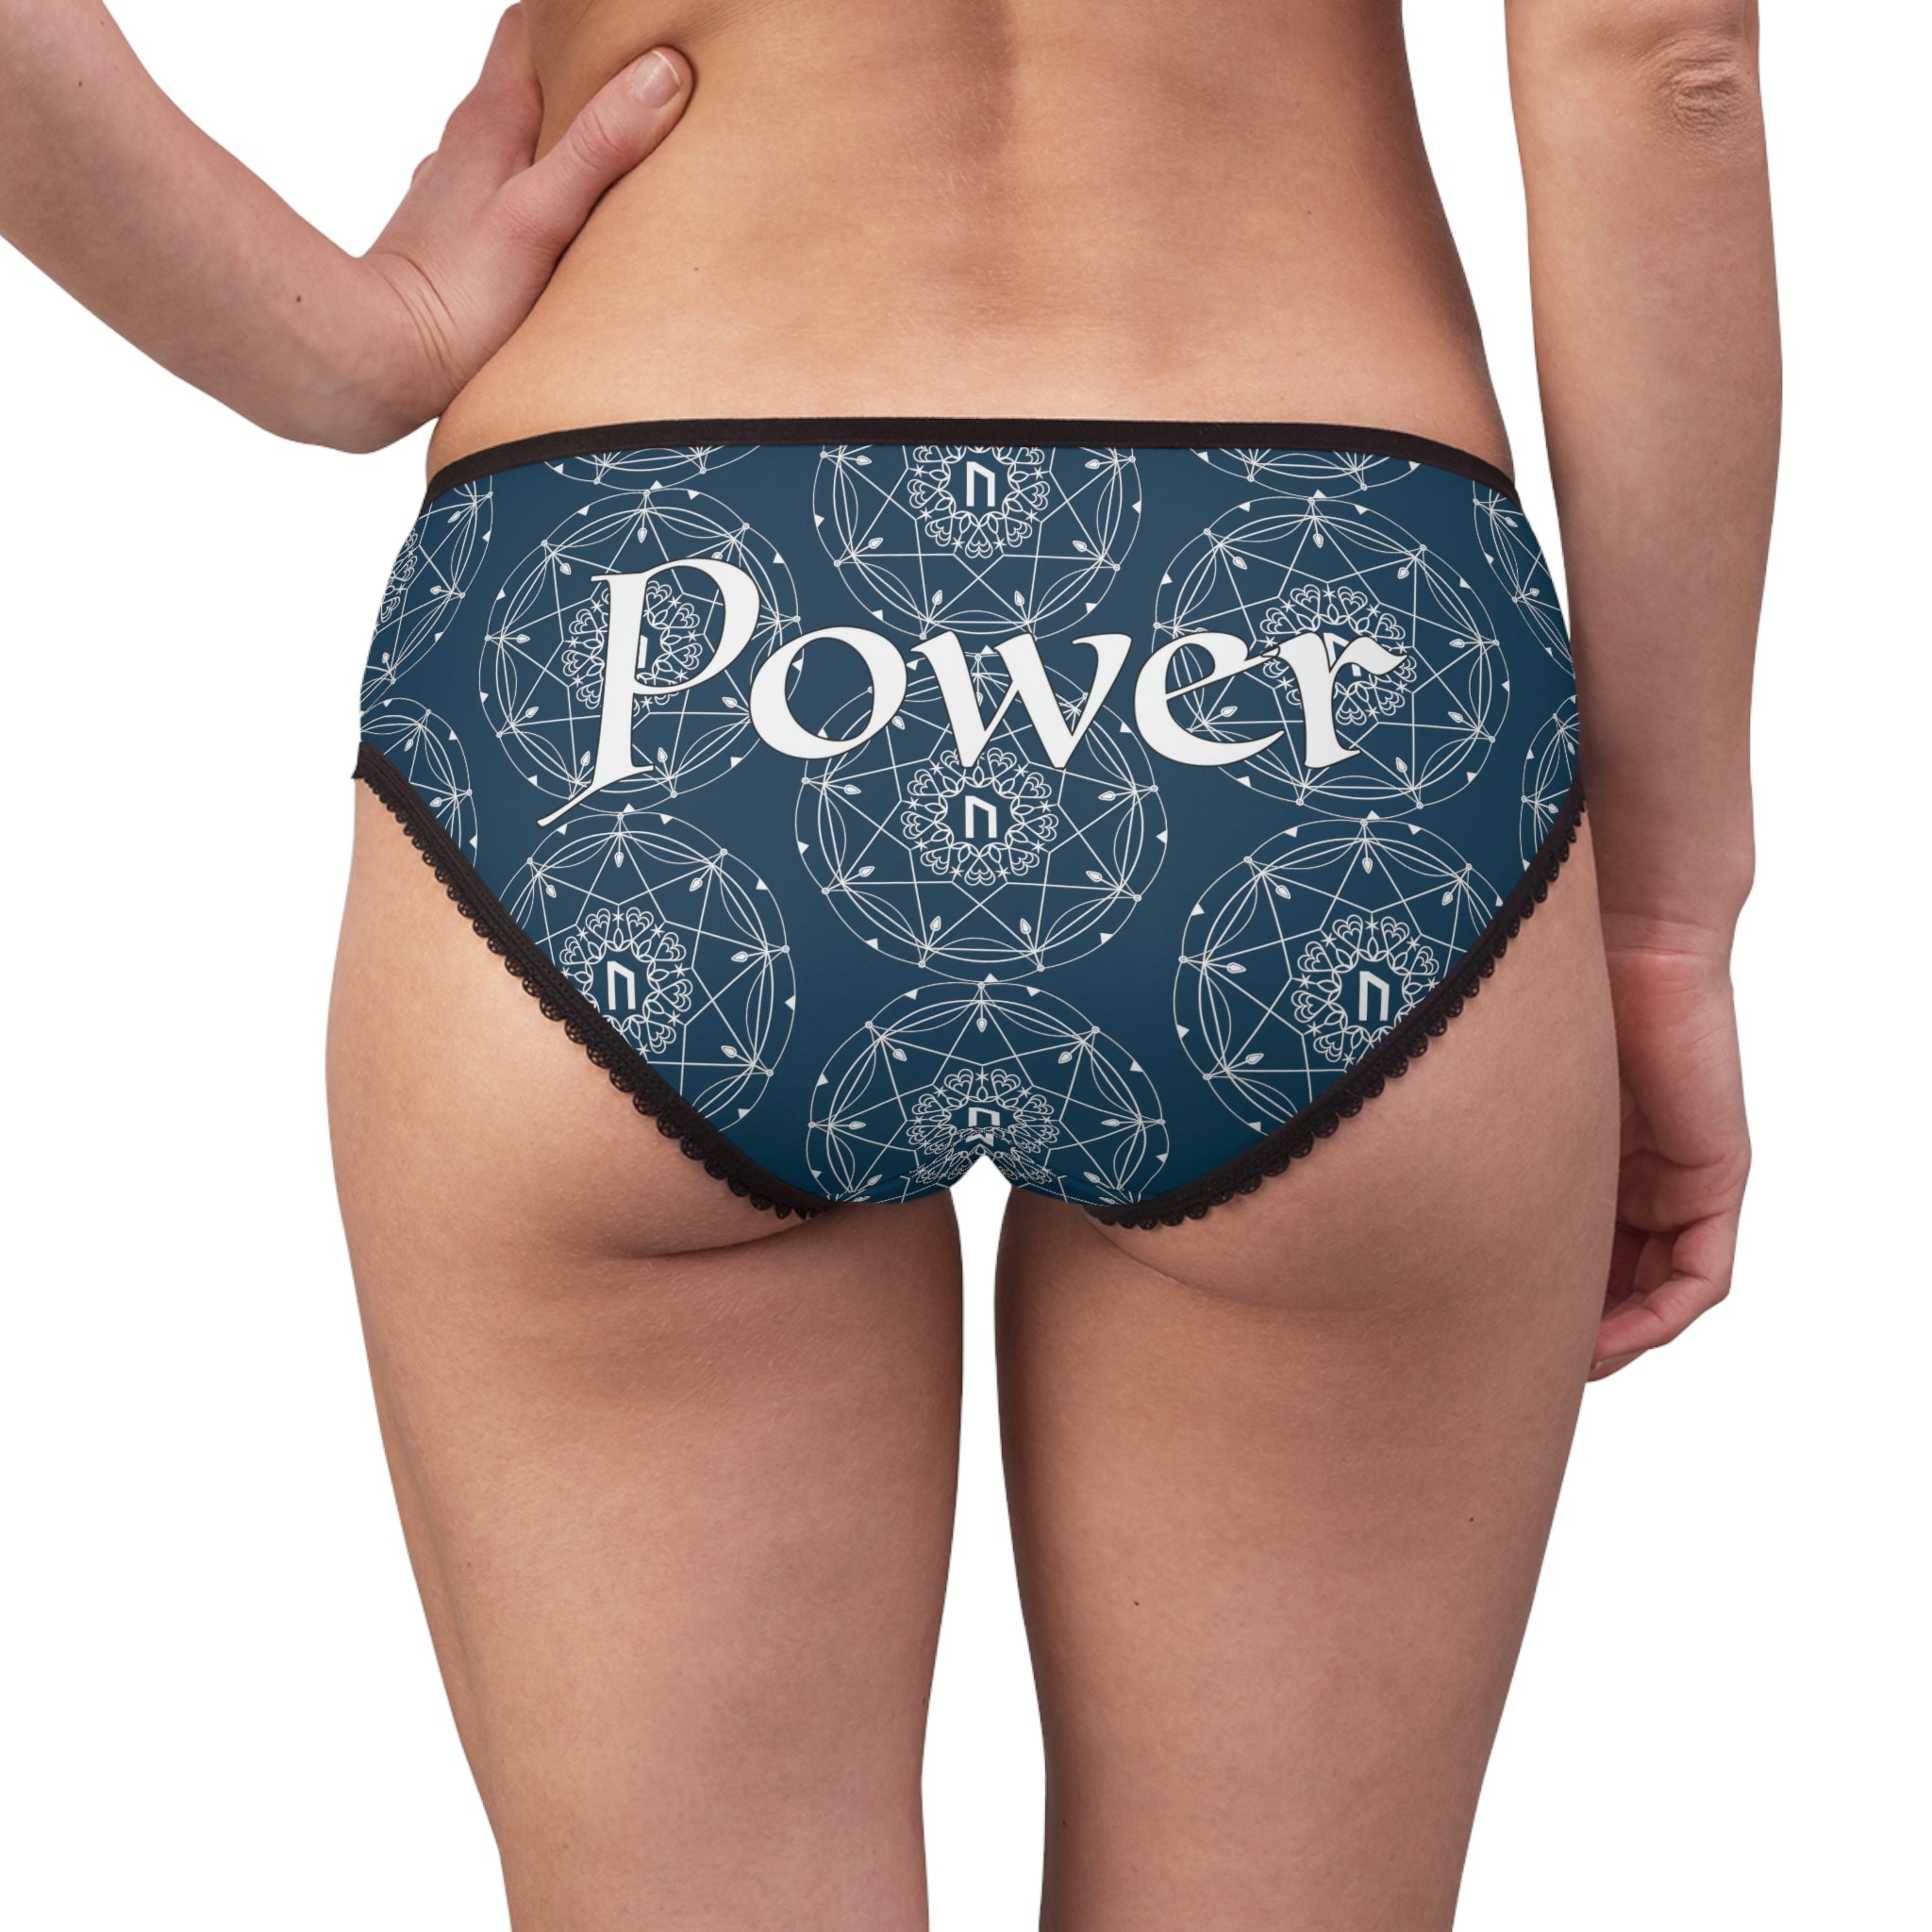 Patti's Power Panties Women's Bikini Brief Panty - Power – Mystery Control